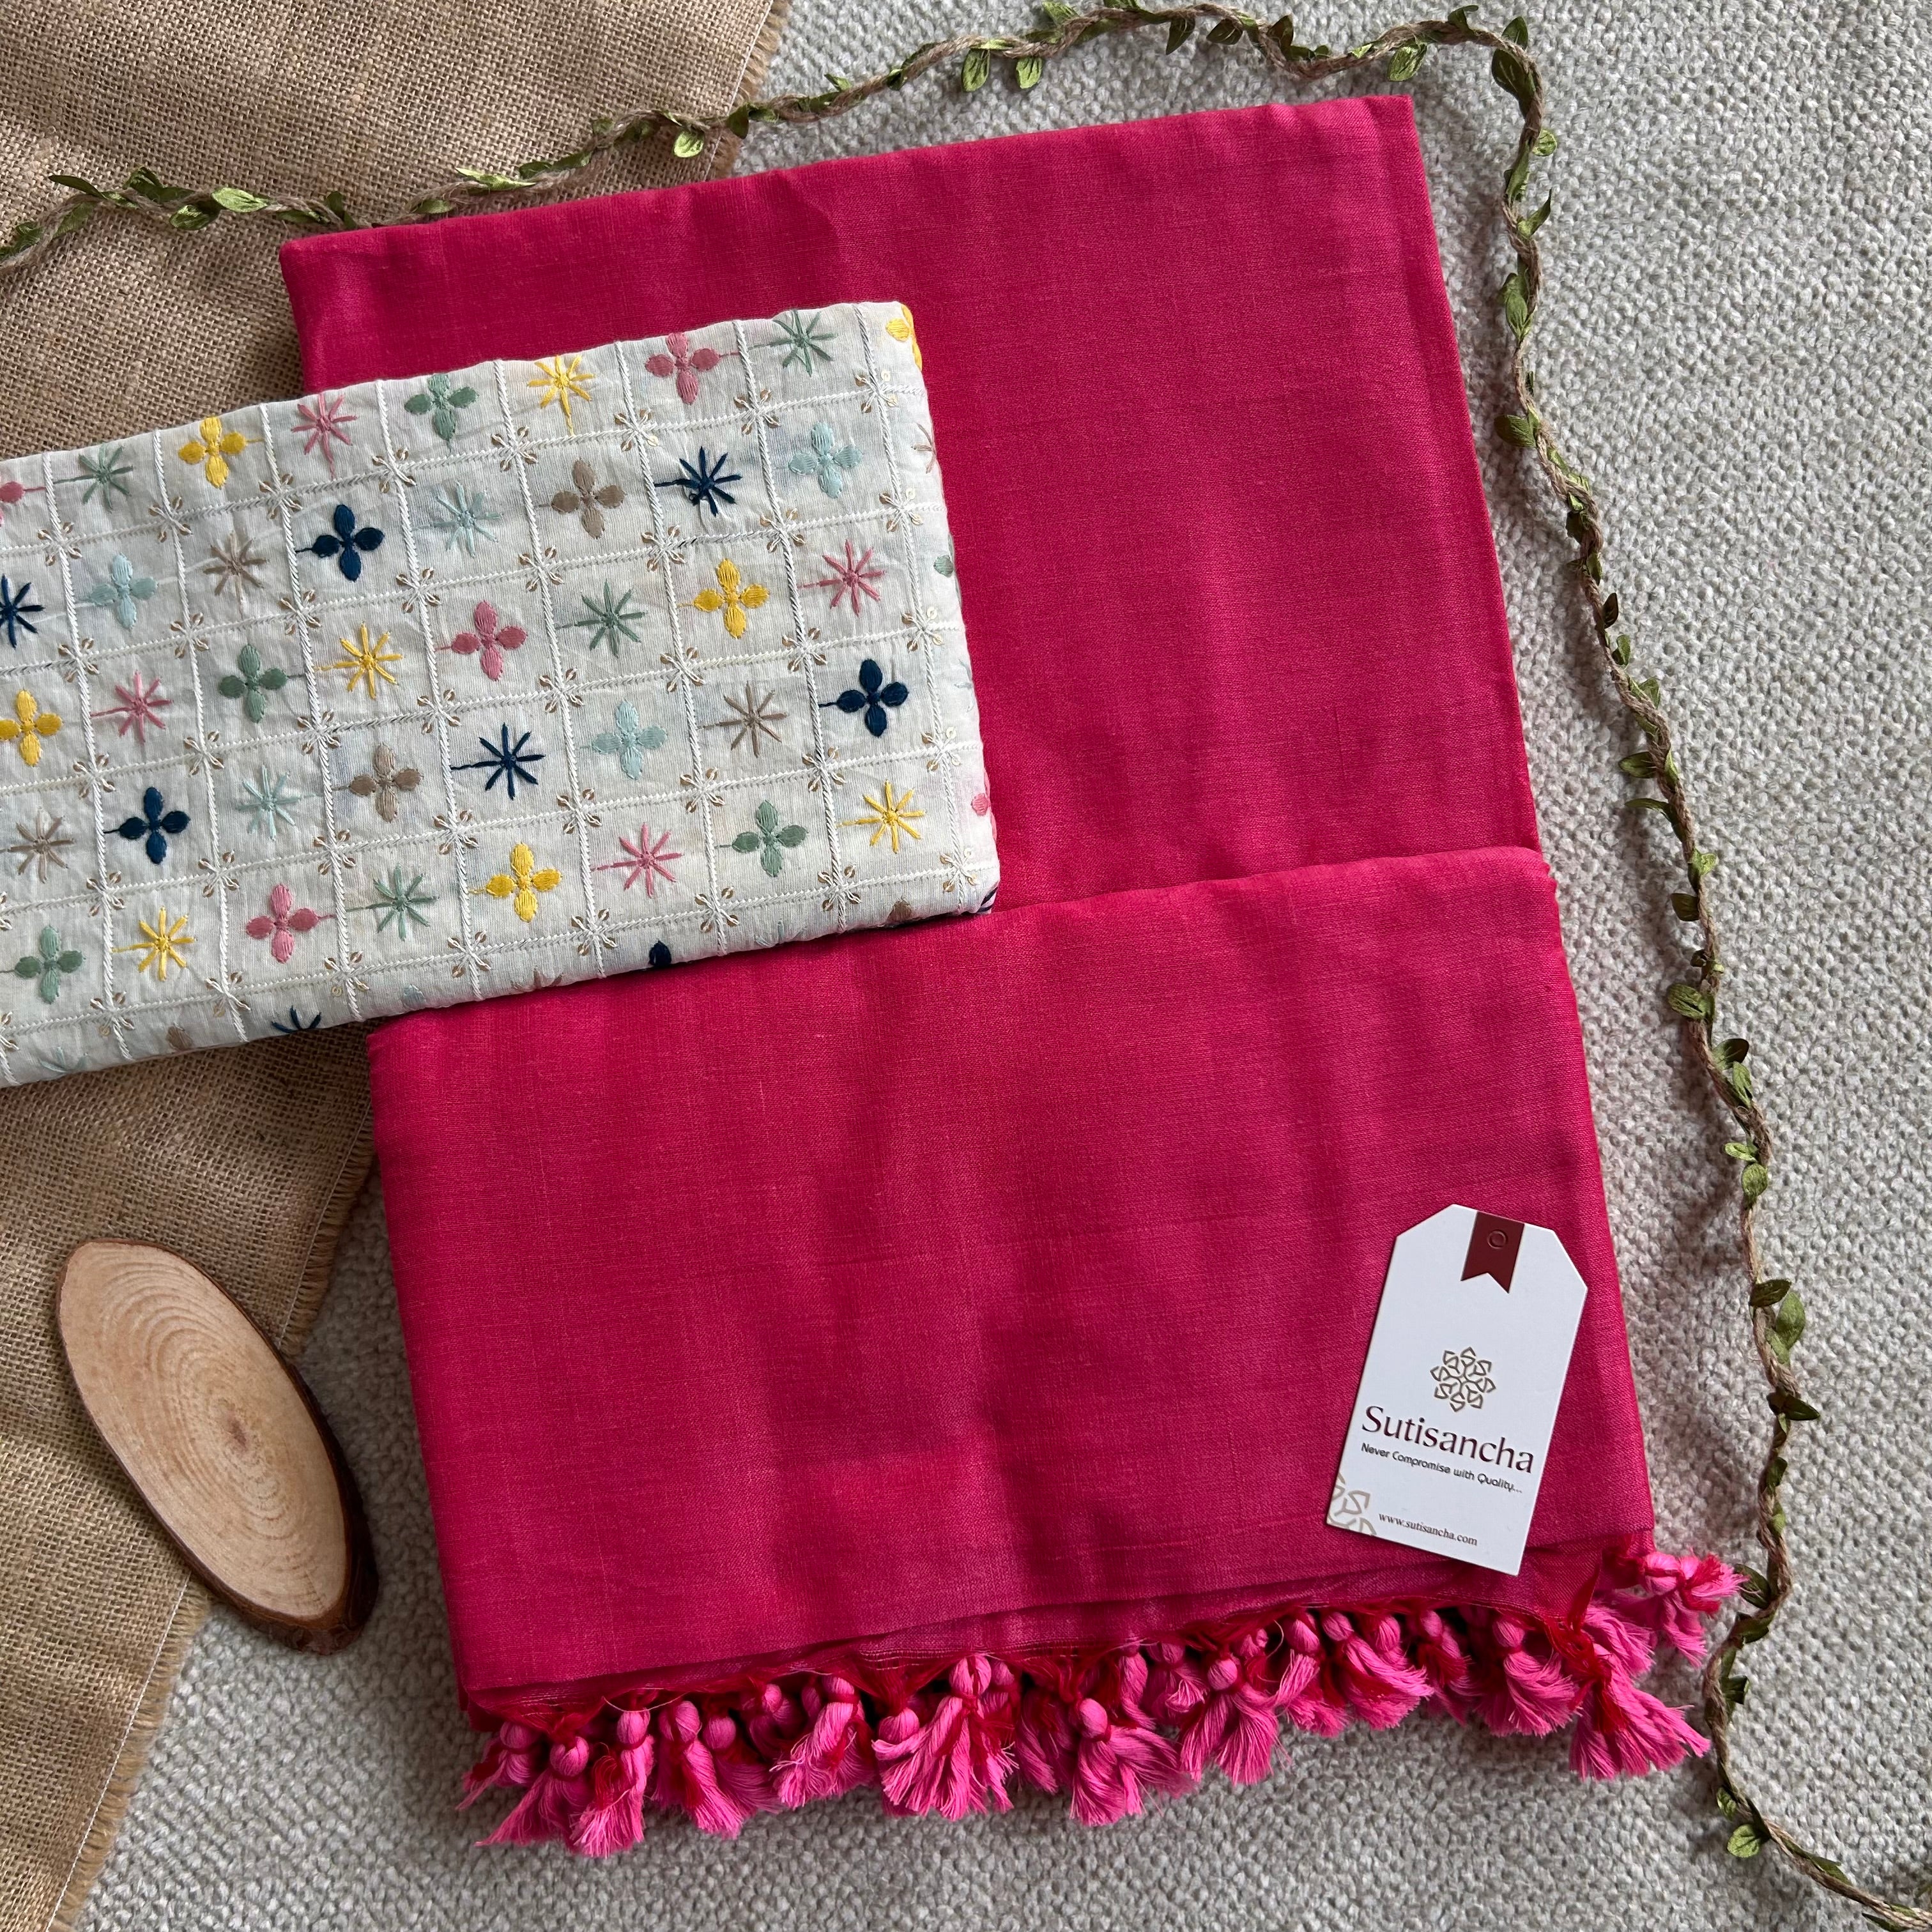 Sutisancha Pink Cotton Saree Designer Work Blouse